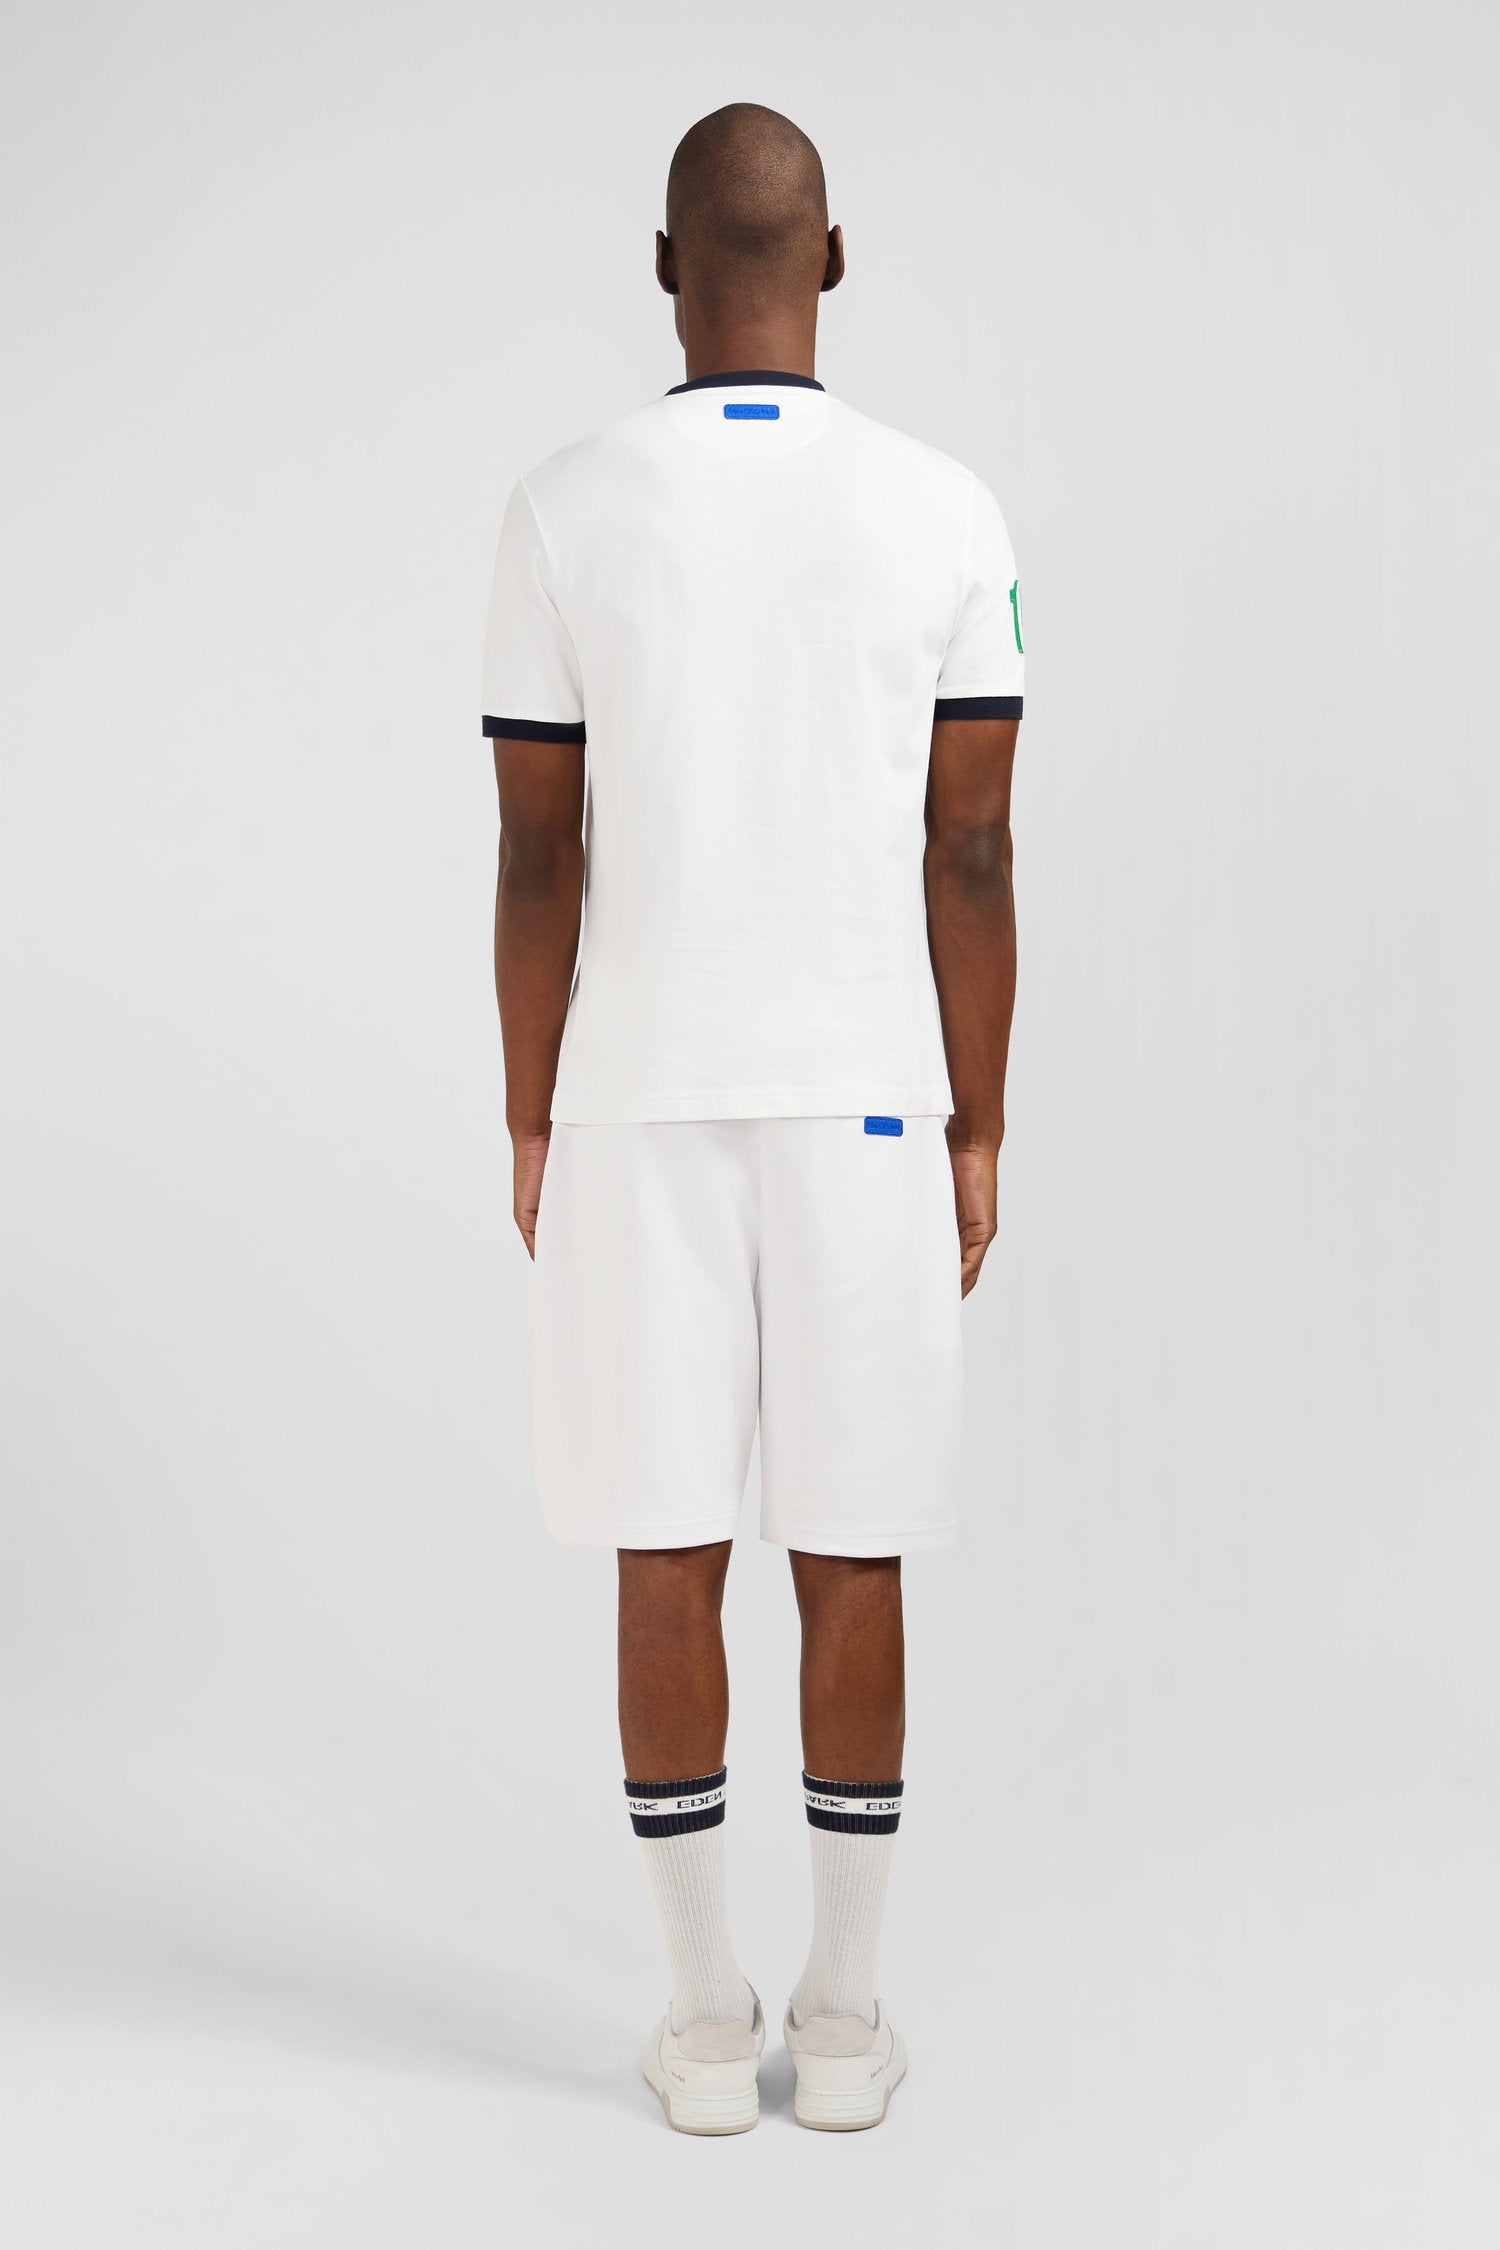 White Short-Sleeved T-Shirt_E24MAITC0036_BC_03